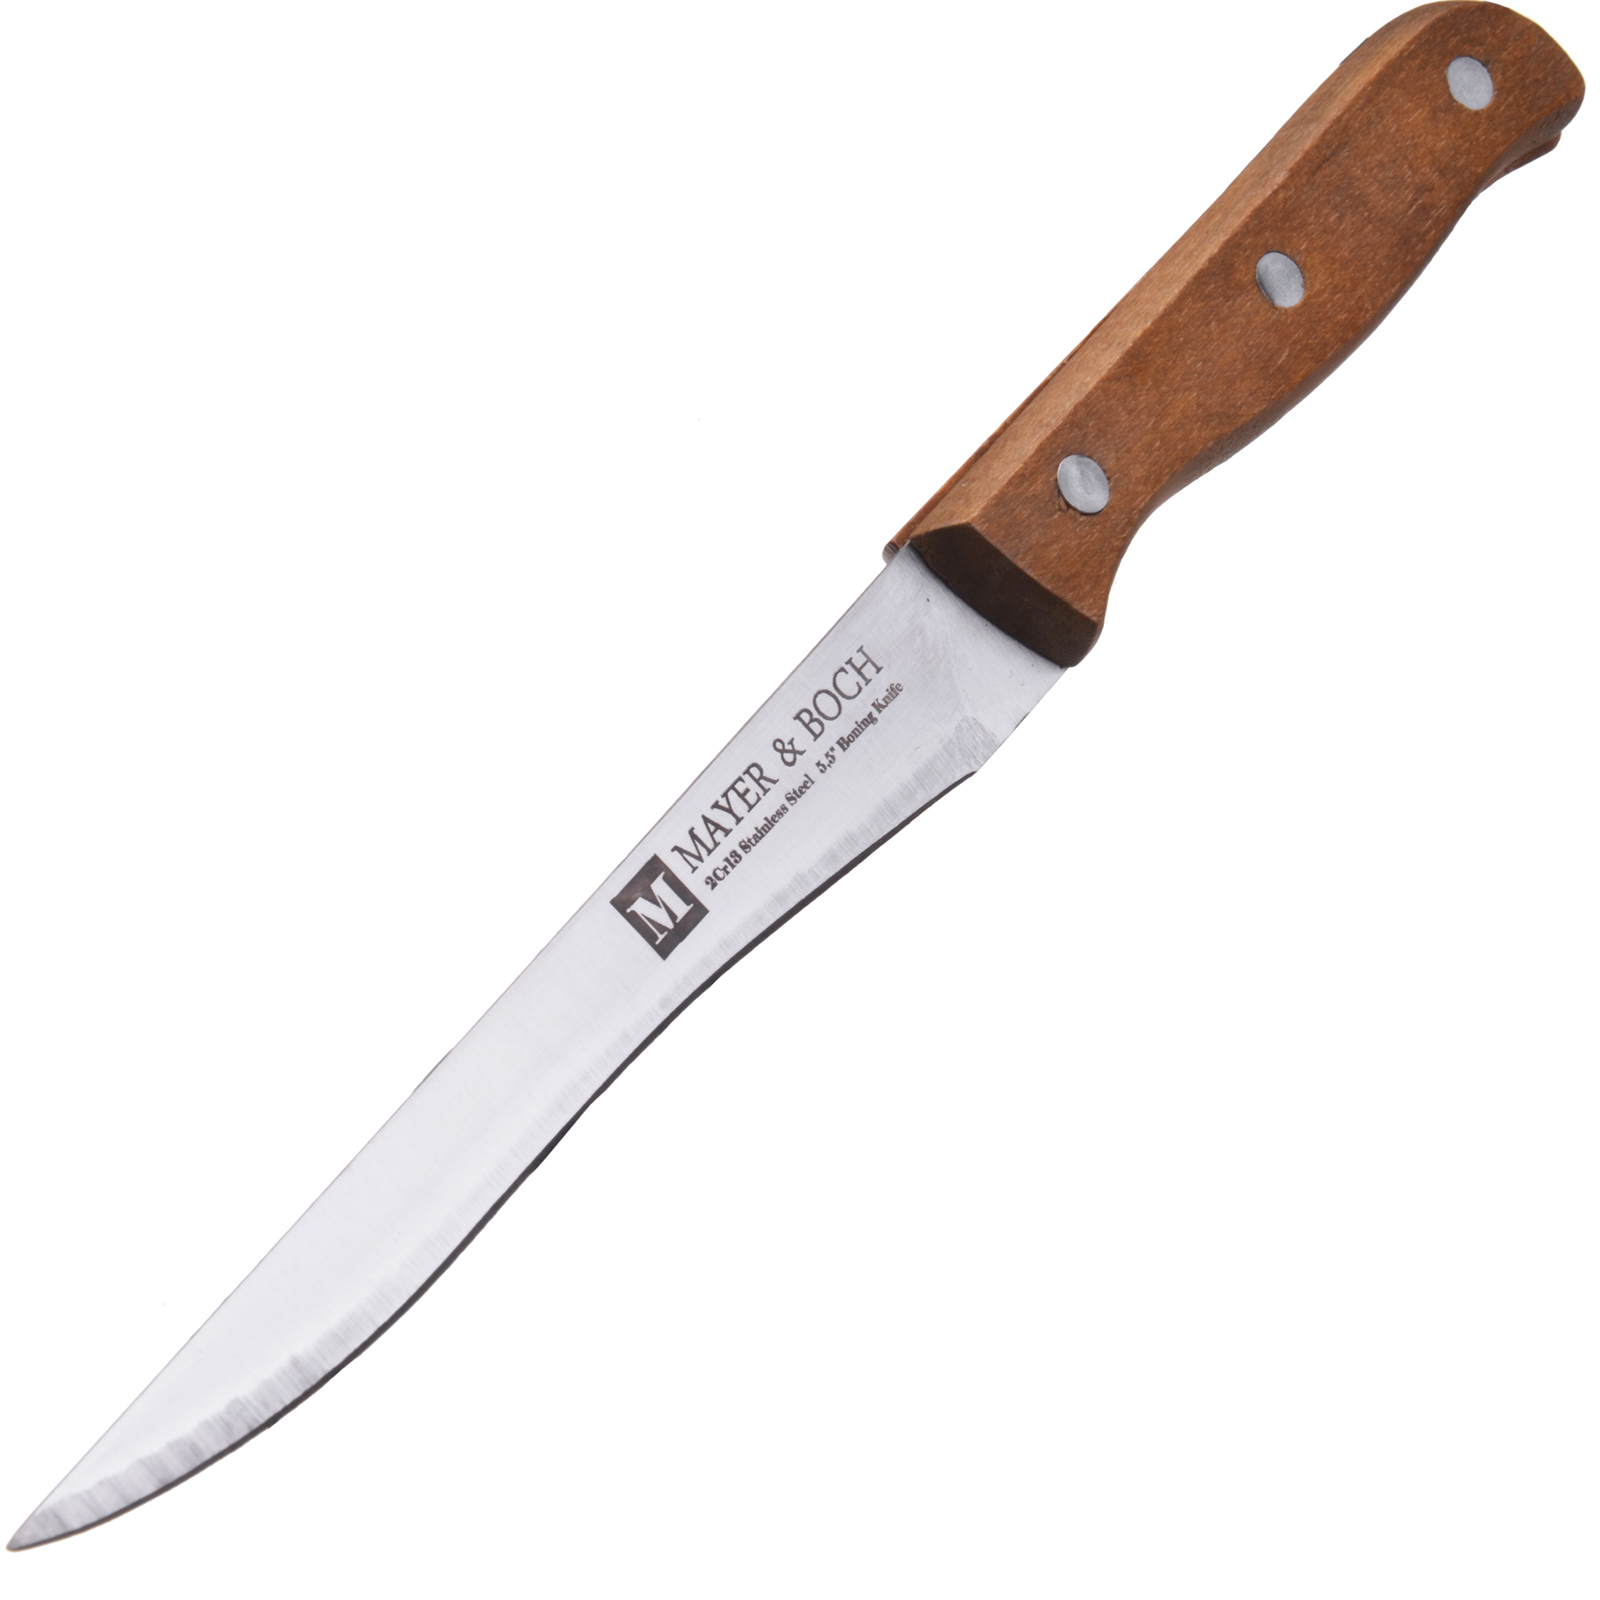 фото Нож для мяса Mayer & Boch Classic, цвет: коричневый, серебристый, длина лезвия 14 см